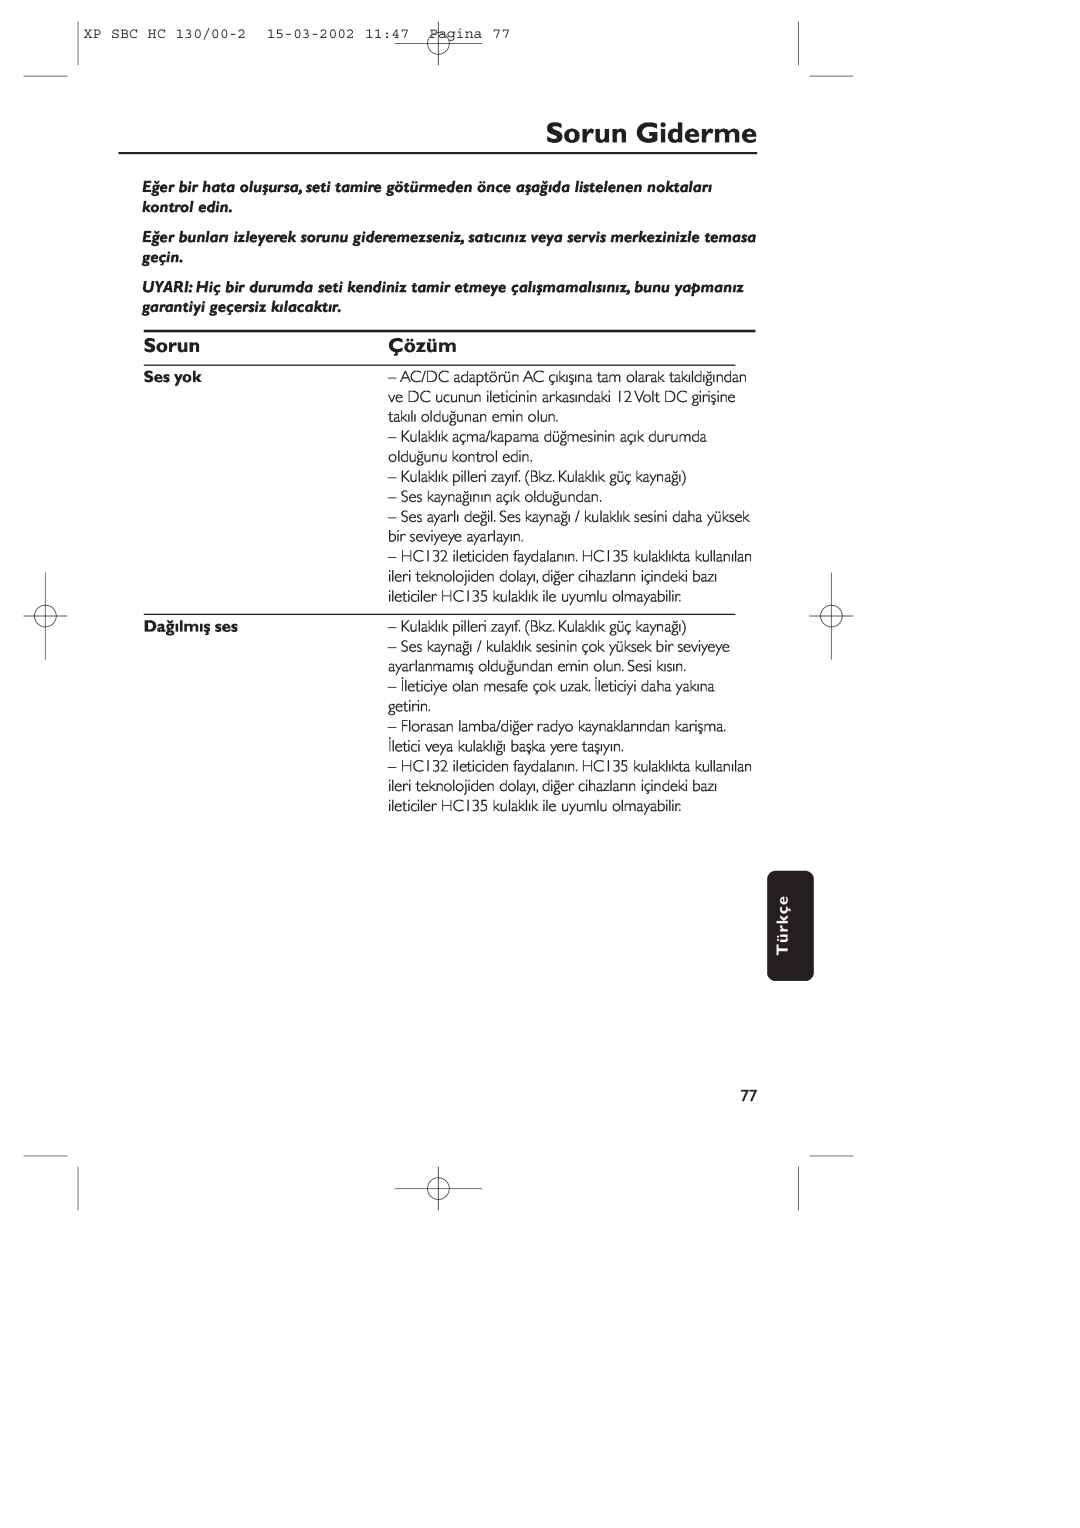 Philips SBC HC130 manual Sorun Giderme, Çözüm, Ses yok, Dağılmış ses, Türkçe 